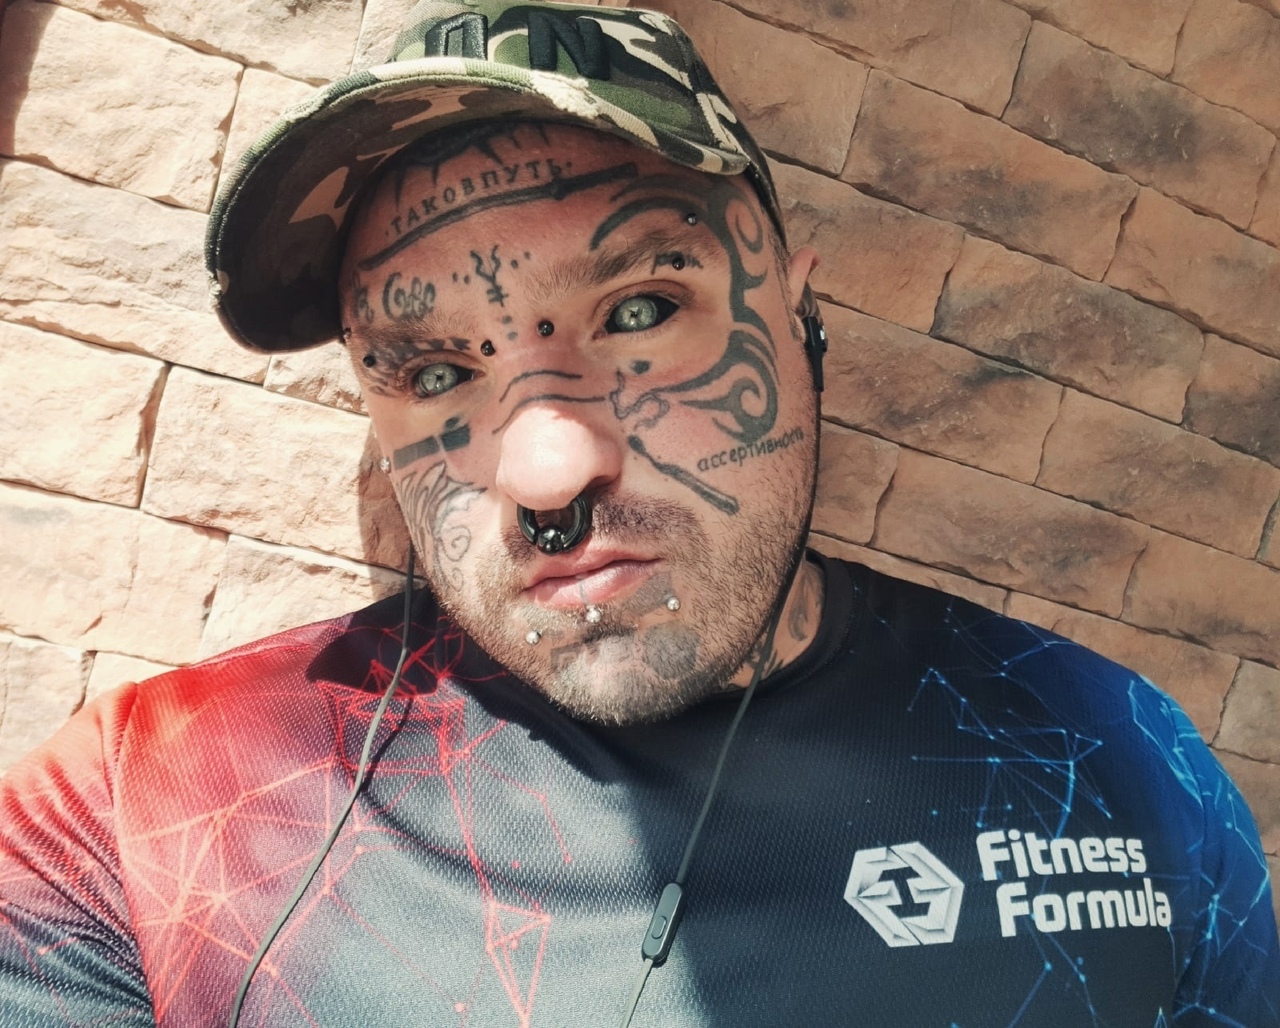 "Зековских тату на мне нет": переехавший в Чепецк спортсмен о черных белках глаз и отказе от сахара